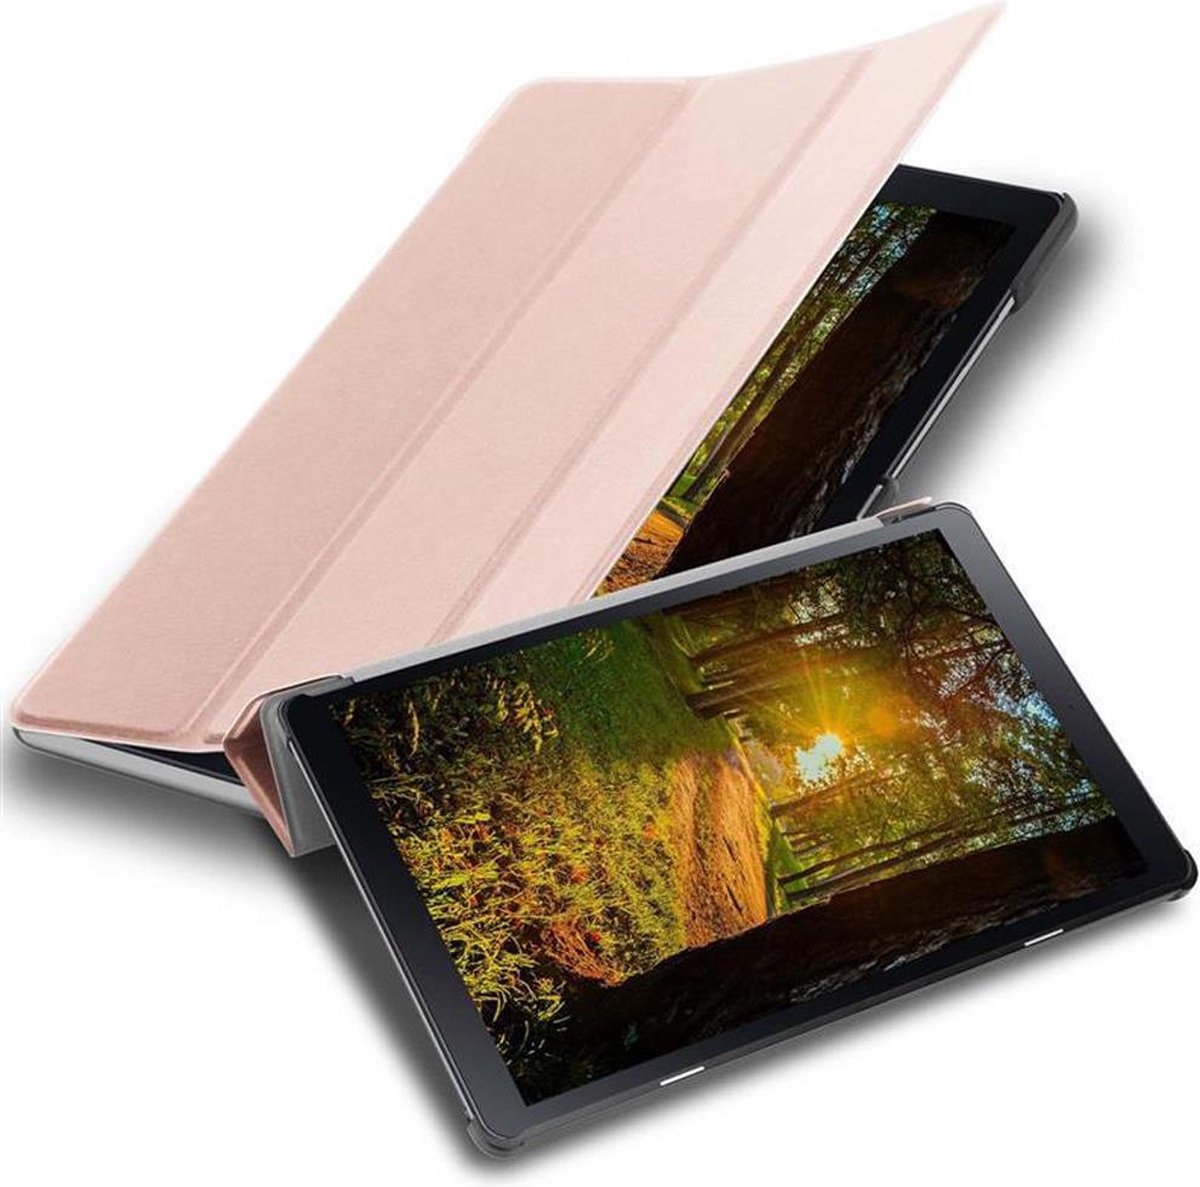 Cadorabo Tablet Hoesje voor Samsung Galaxy Tab A (10.5 inch) in PASTEL ROZE GOUD - Ultra dun beschermend geval met automatische Wake Up en Stand functie Book Case Cover Etui